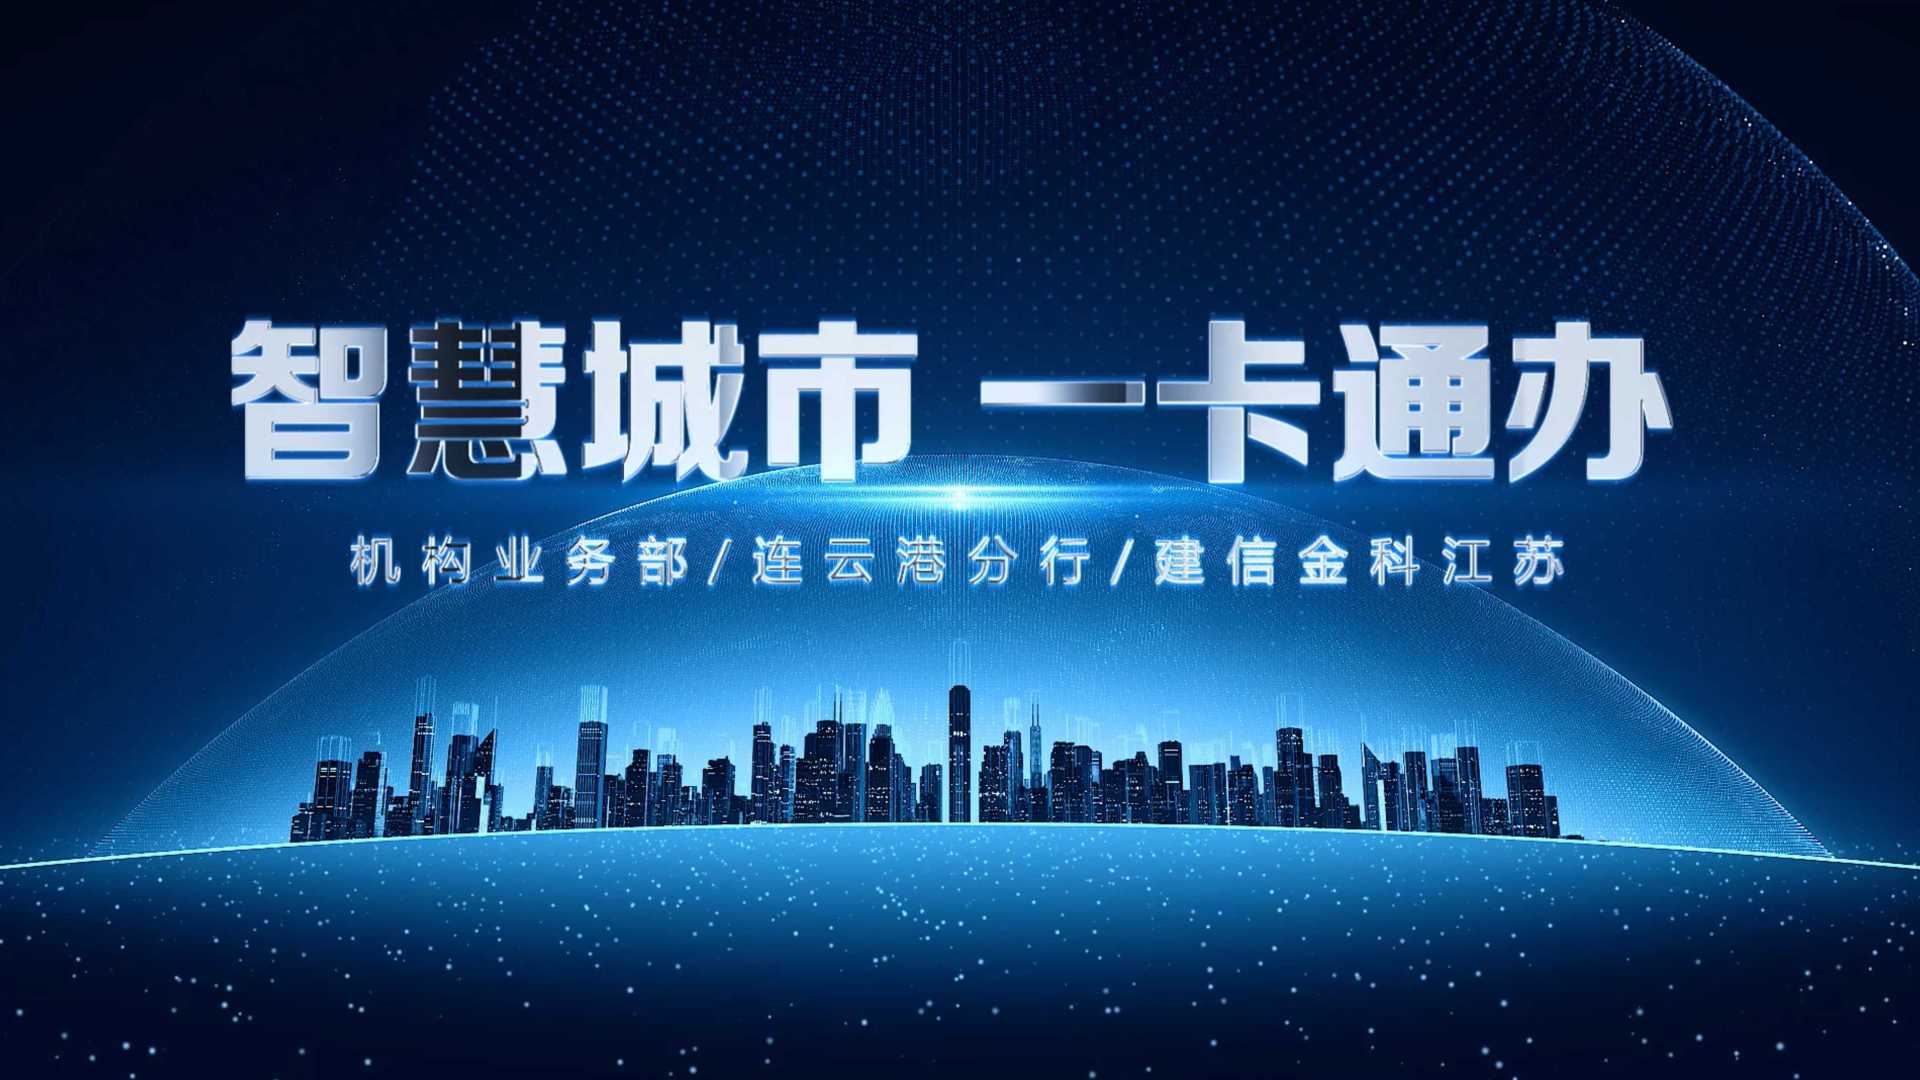 中国建设银行丨《智慧城市 一卡通办》  2021金融产业创新产品宣传片